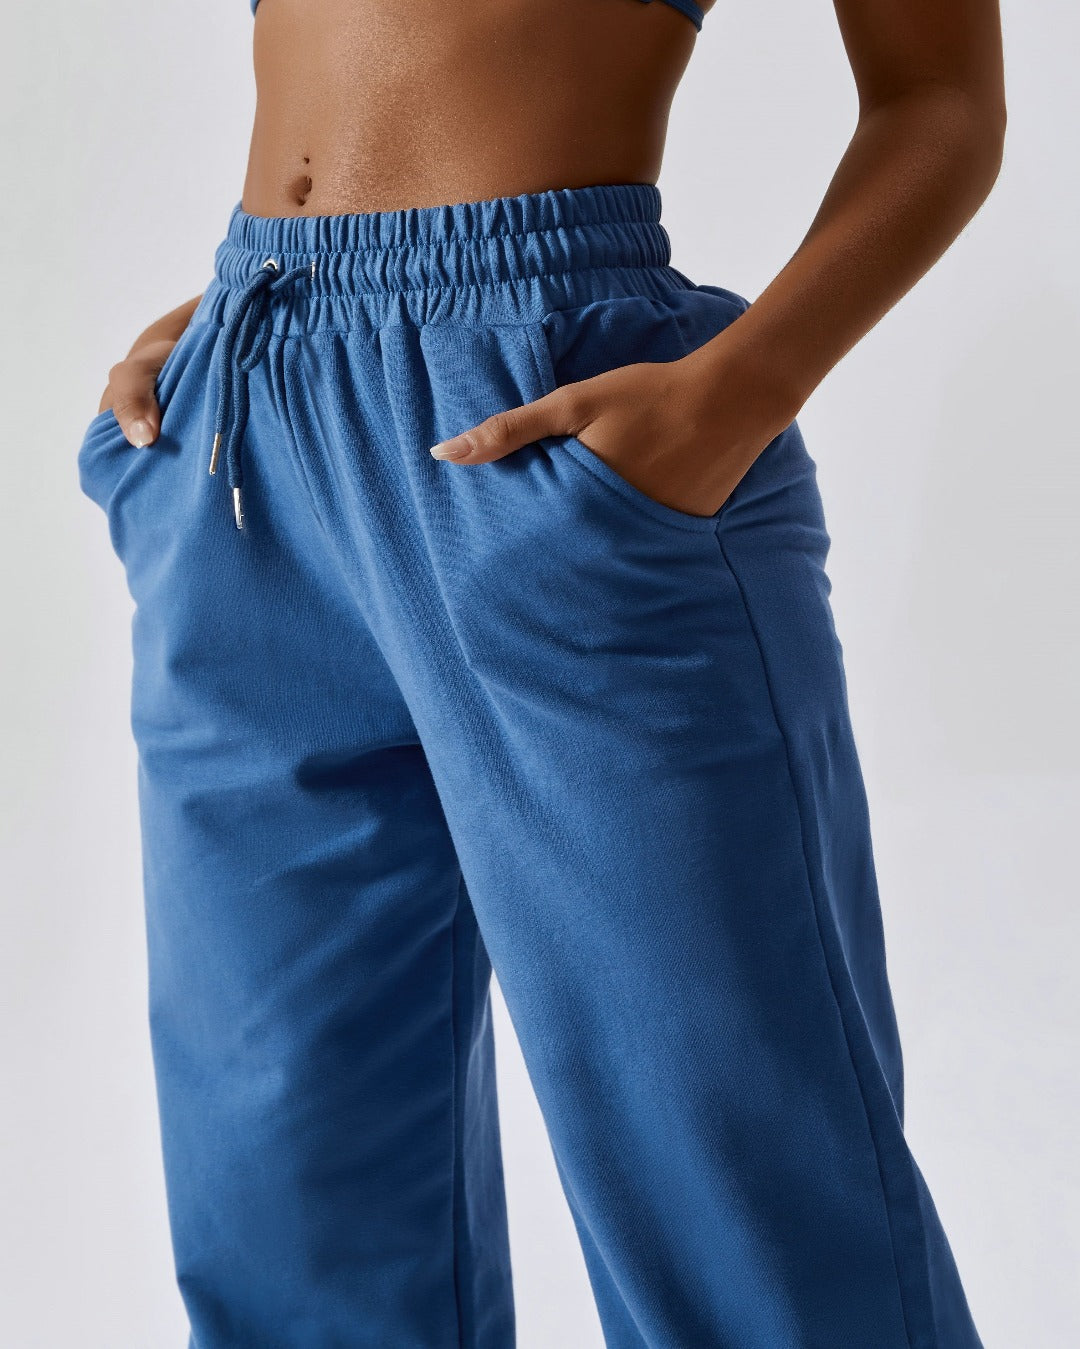 Blue high waist drawstring waistband cuffed ankles joggers bottoms